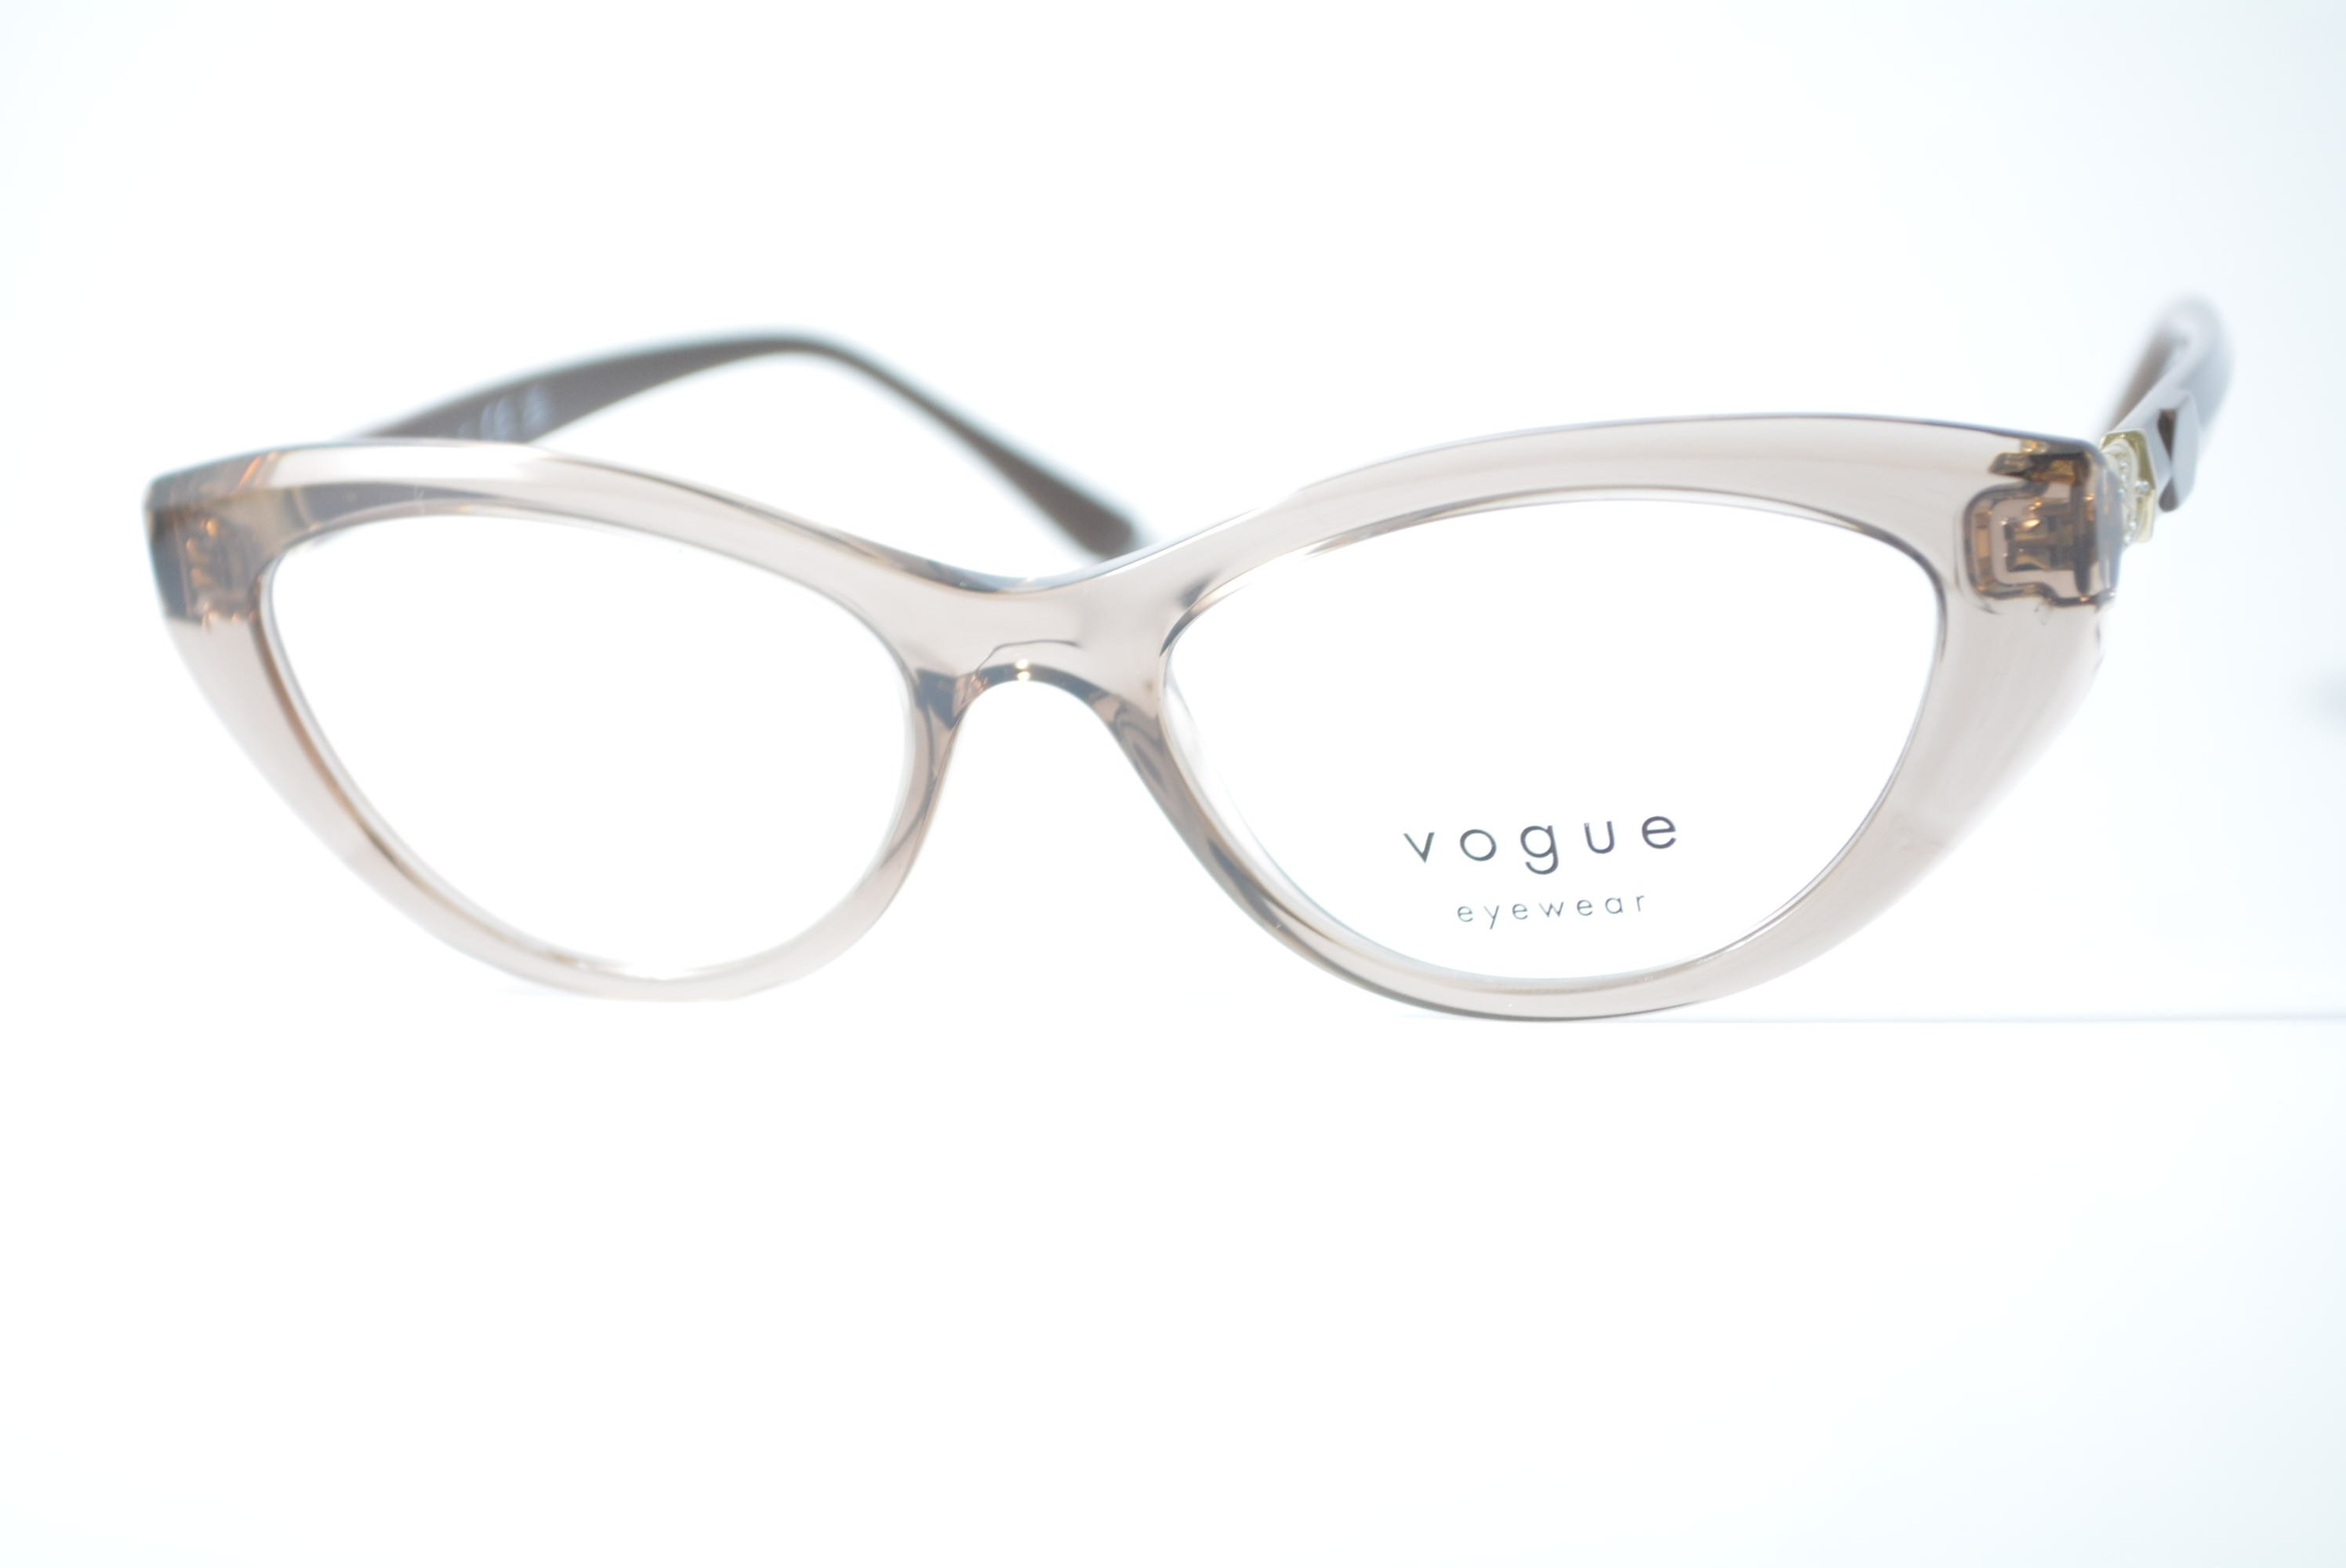 armação de óculos Vogue mod vo5478-b 2940